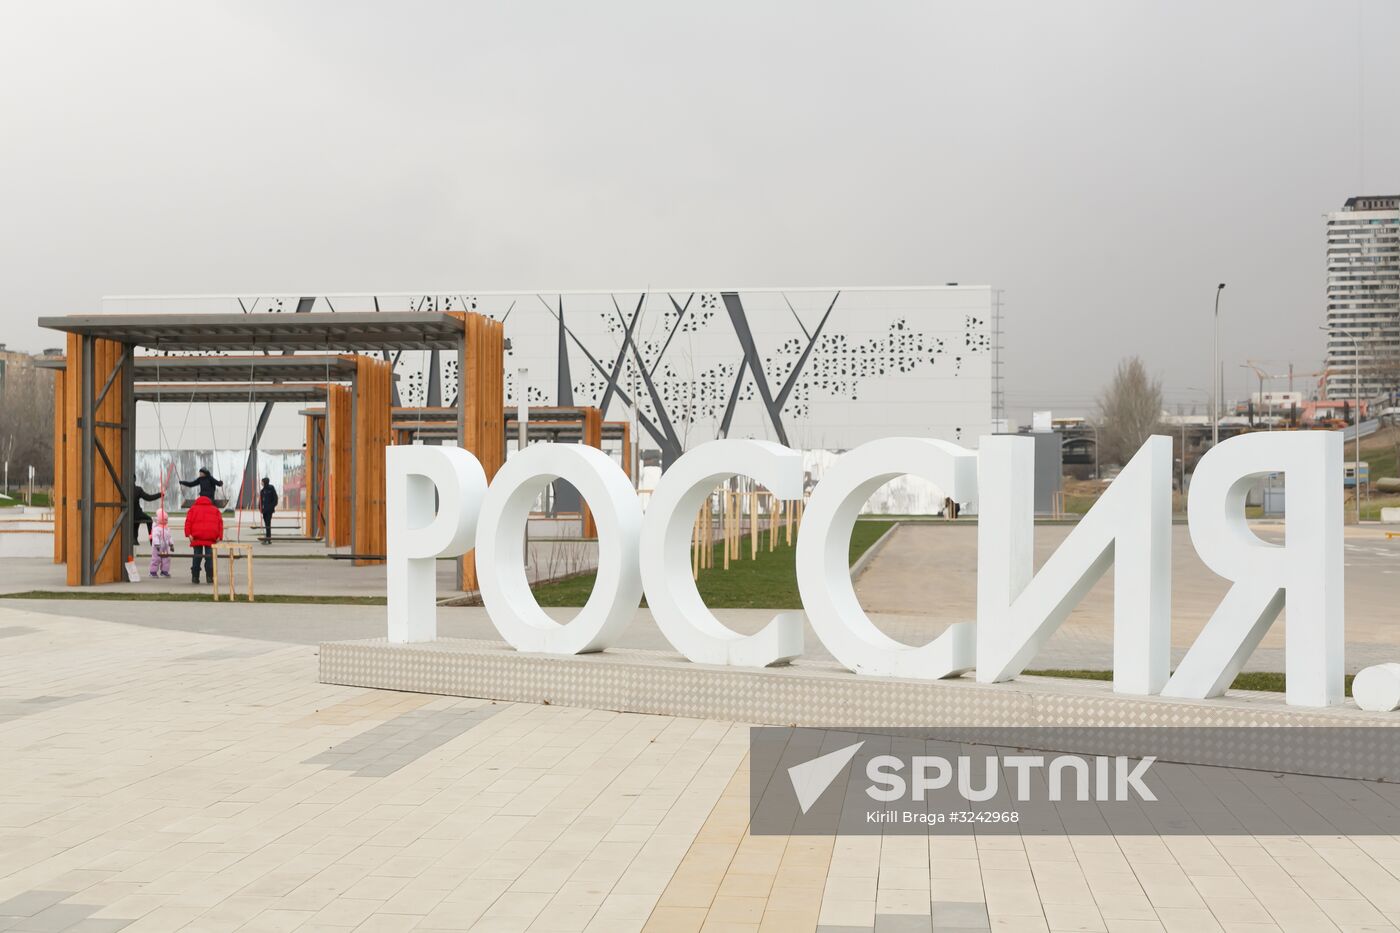 2018 FIFA World Cup press center in Volgograd